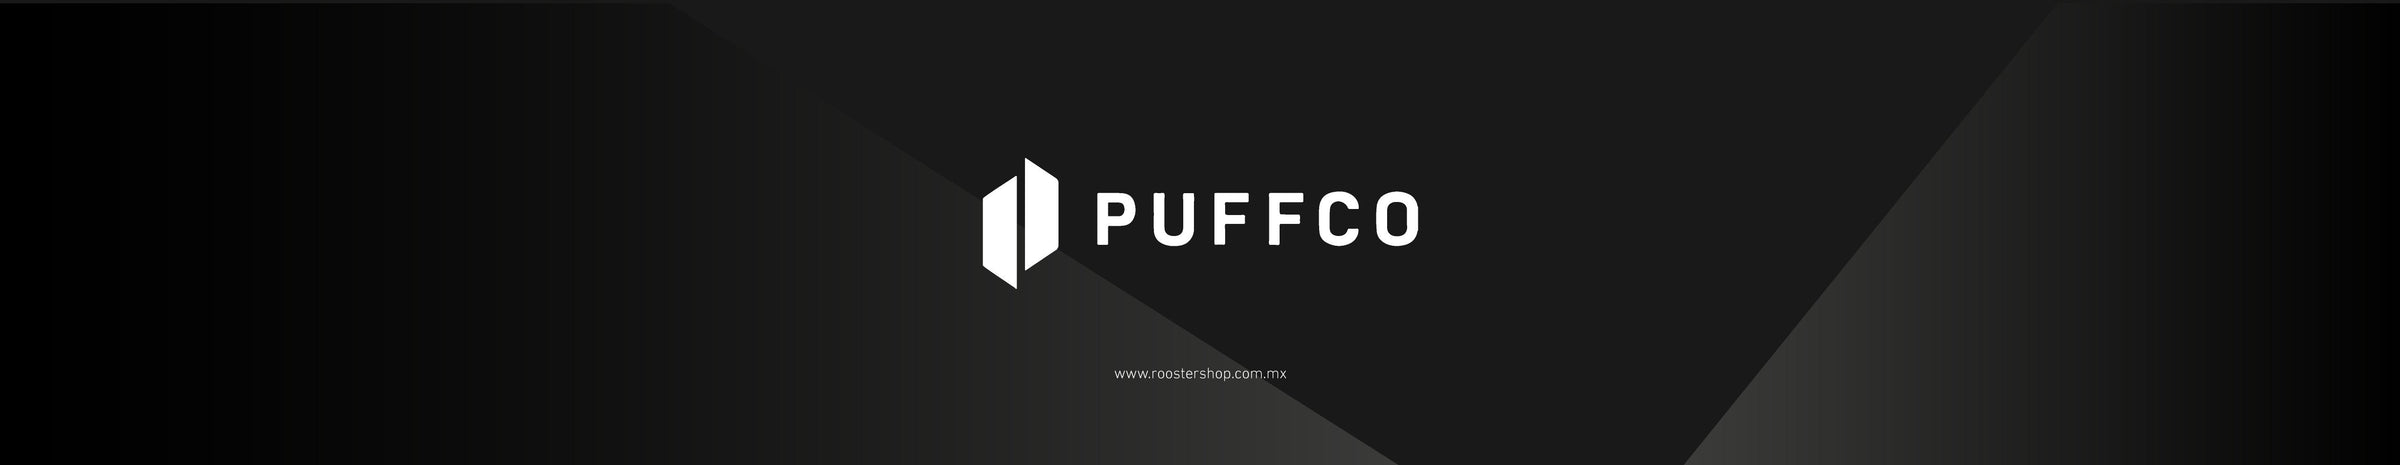 Puffco Mexico Distribuidor Oficial